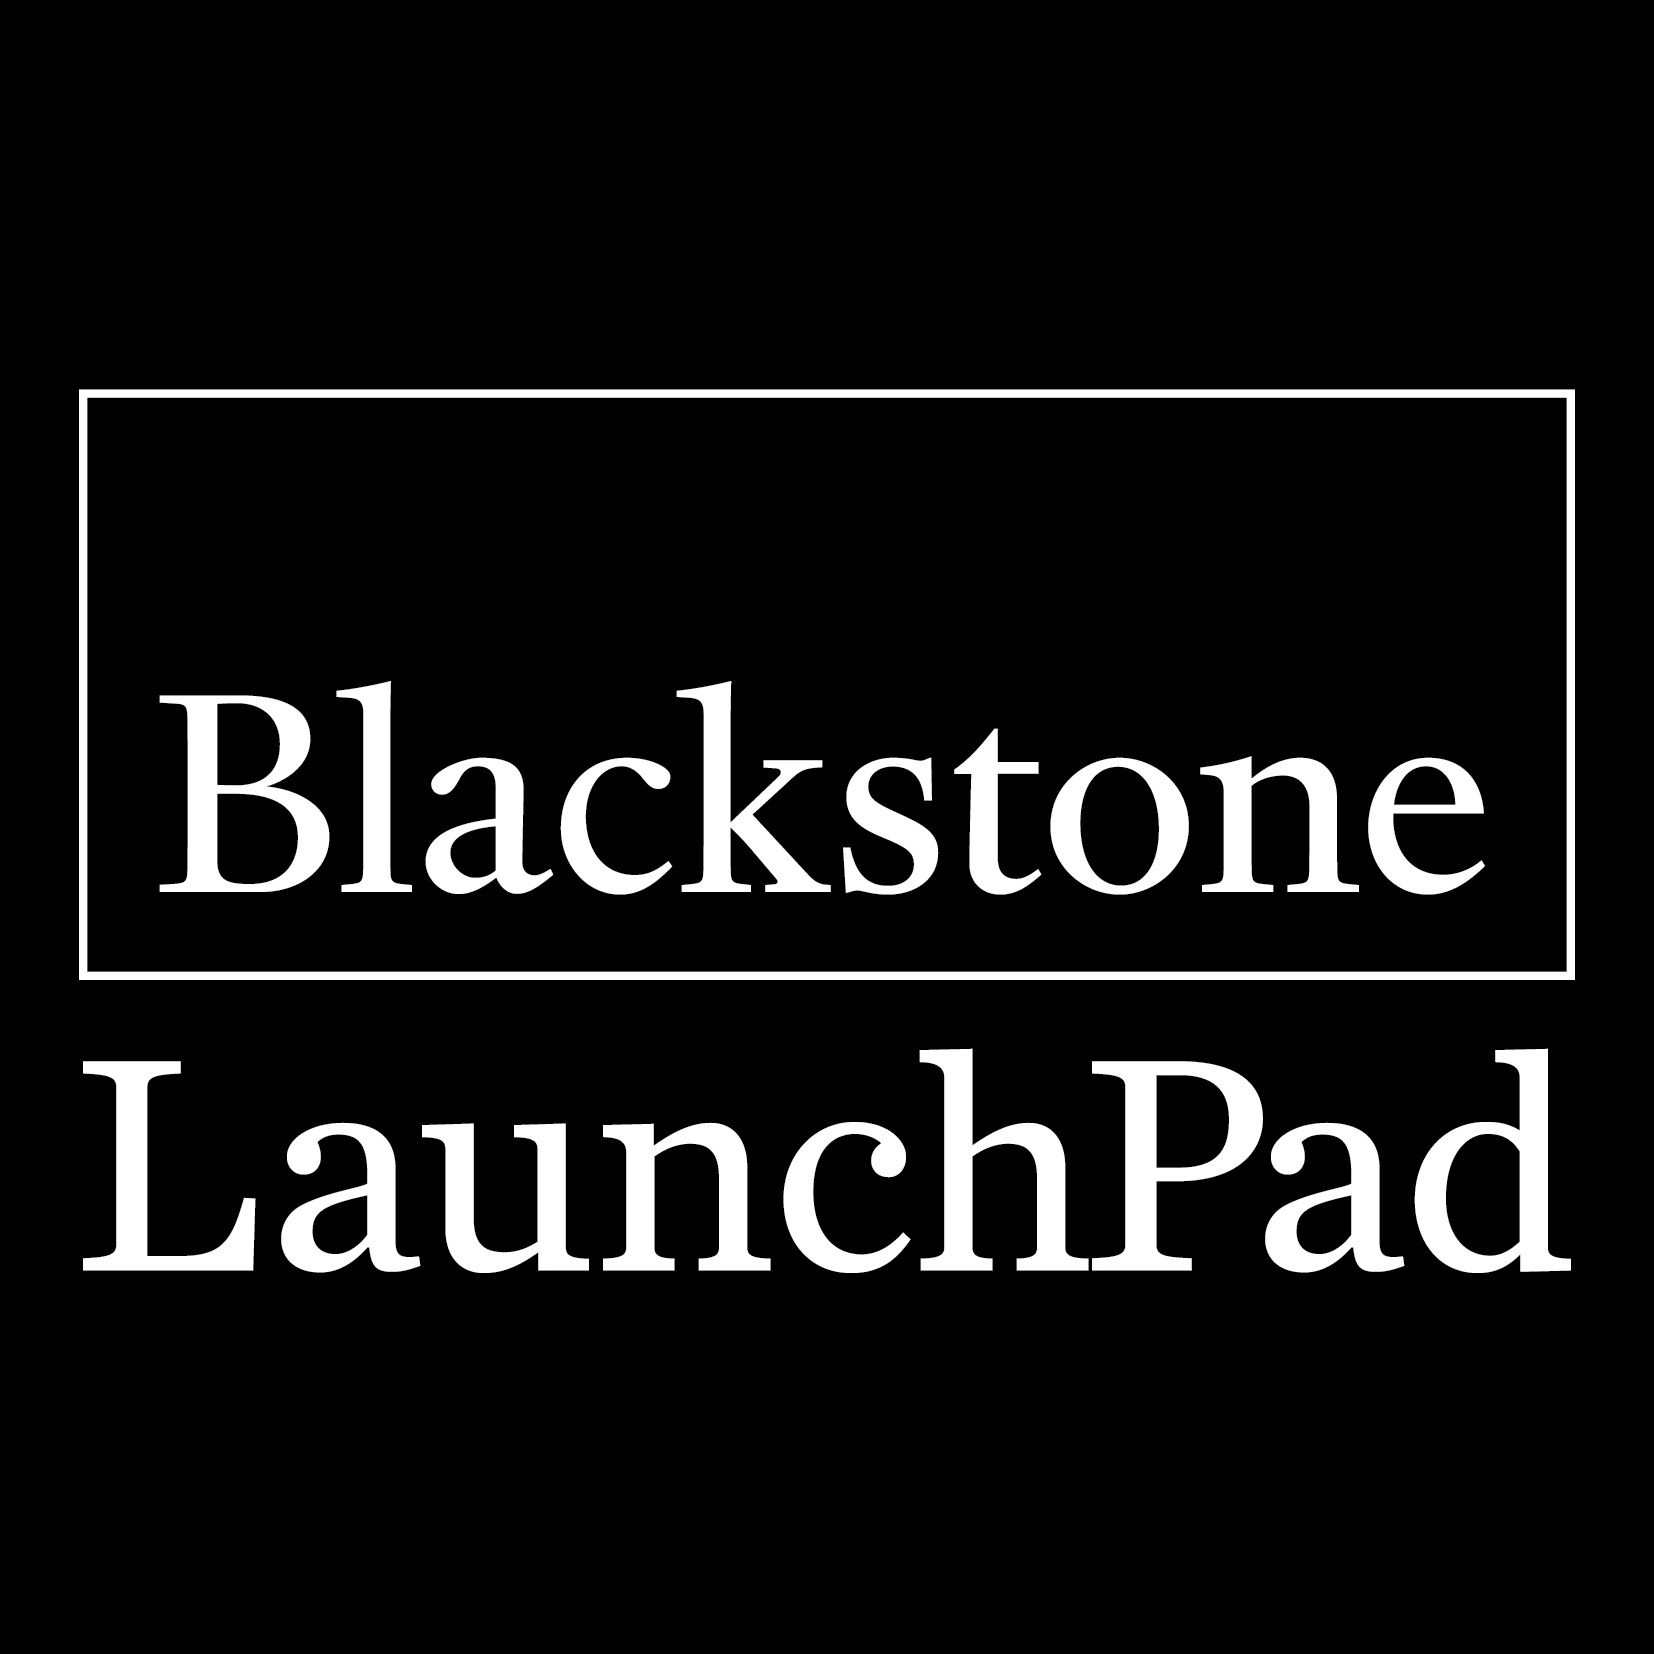 Blackstone Logo - Blackstone logo - Blackstone LaunchPad